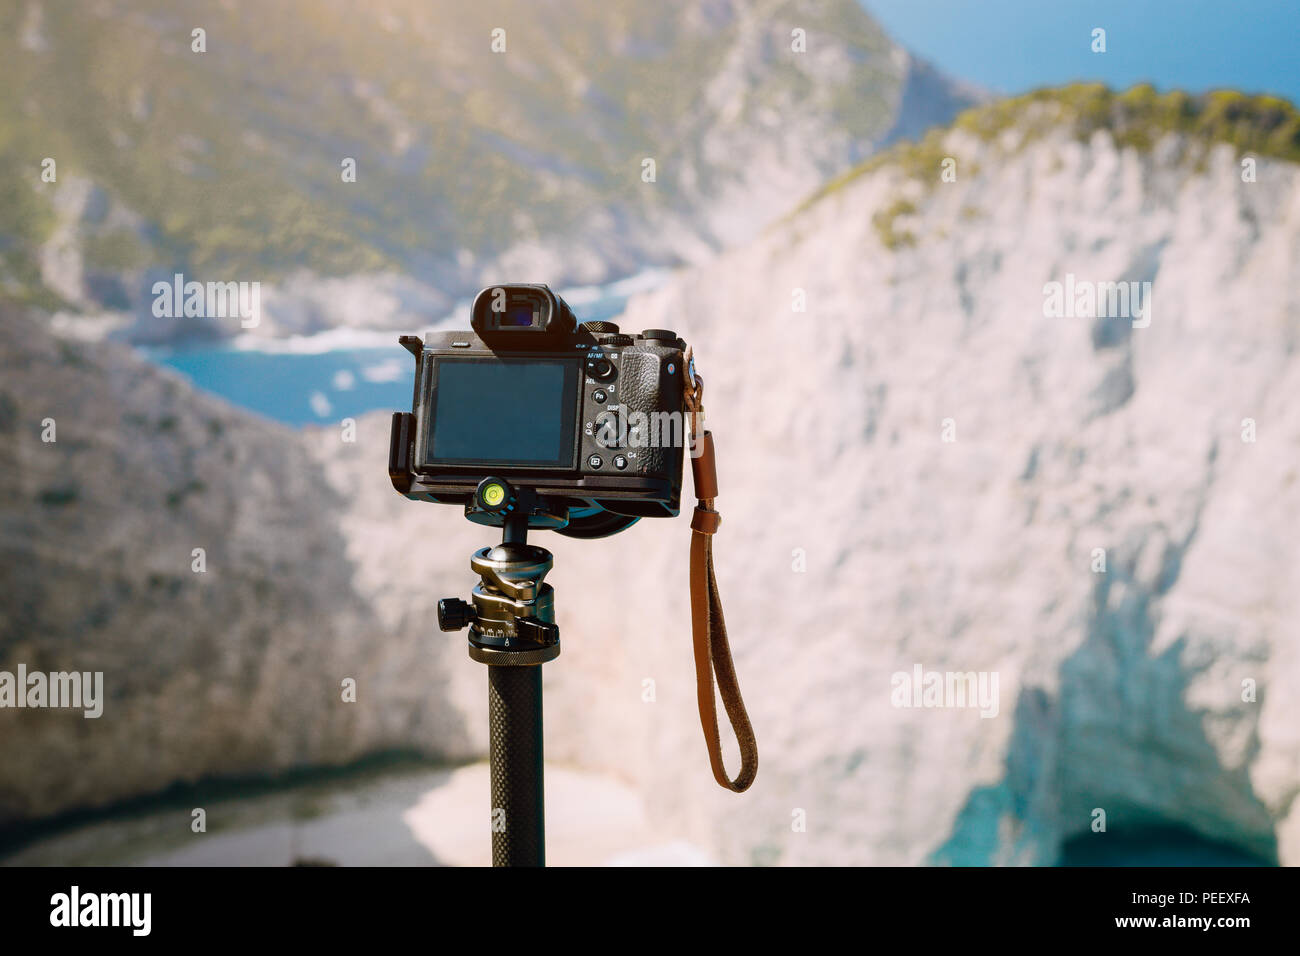 Digital Foto Kamera auf Stativ gegen riesige Felsen Felsen von Navagio Strand in der Morgensonne Licht. Besuchen Sie berühmte Sehenswürdigkeiten Lage auf der Insel Zakynthos, Griechenland Stockfoto